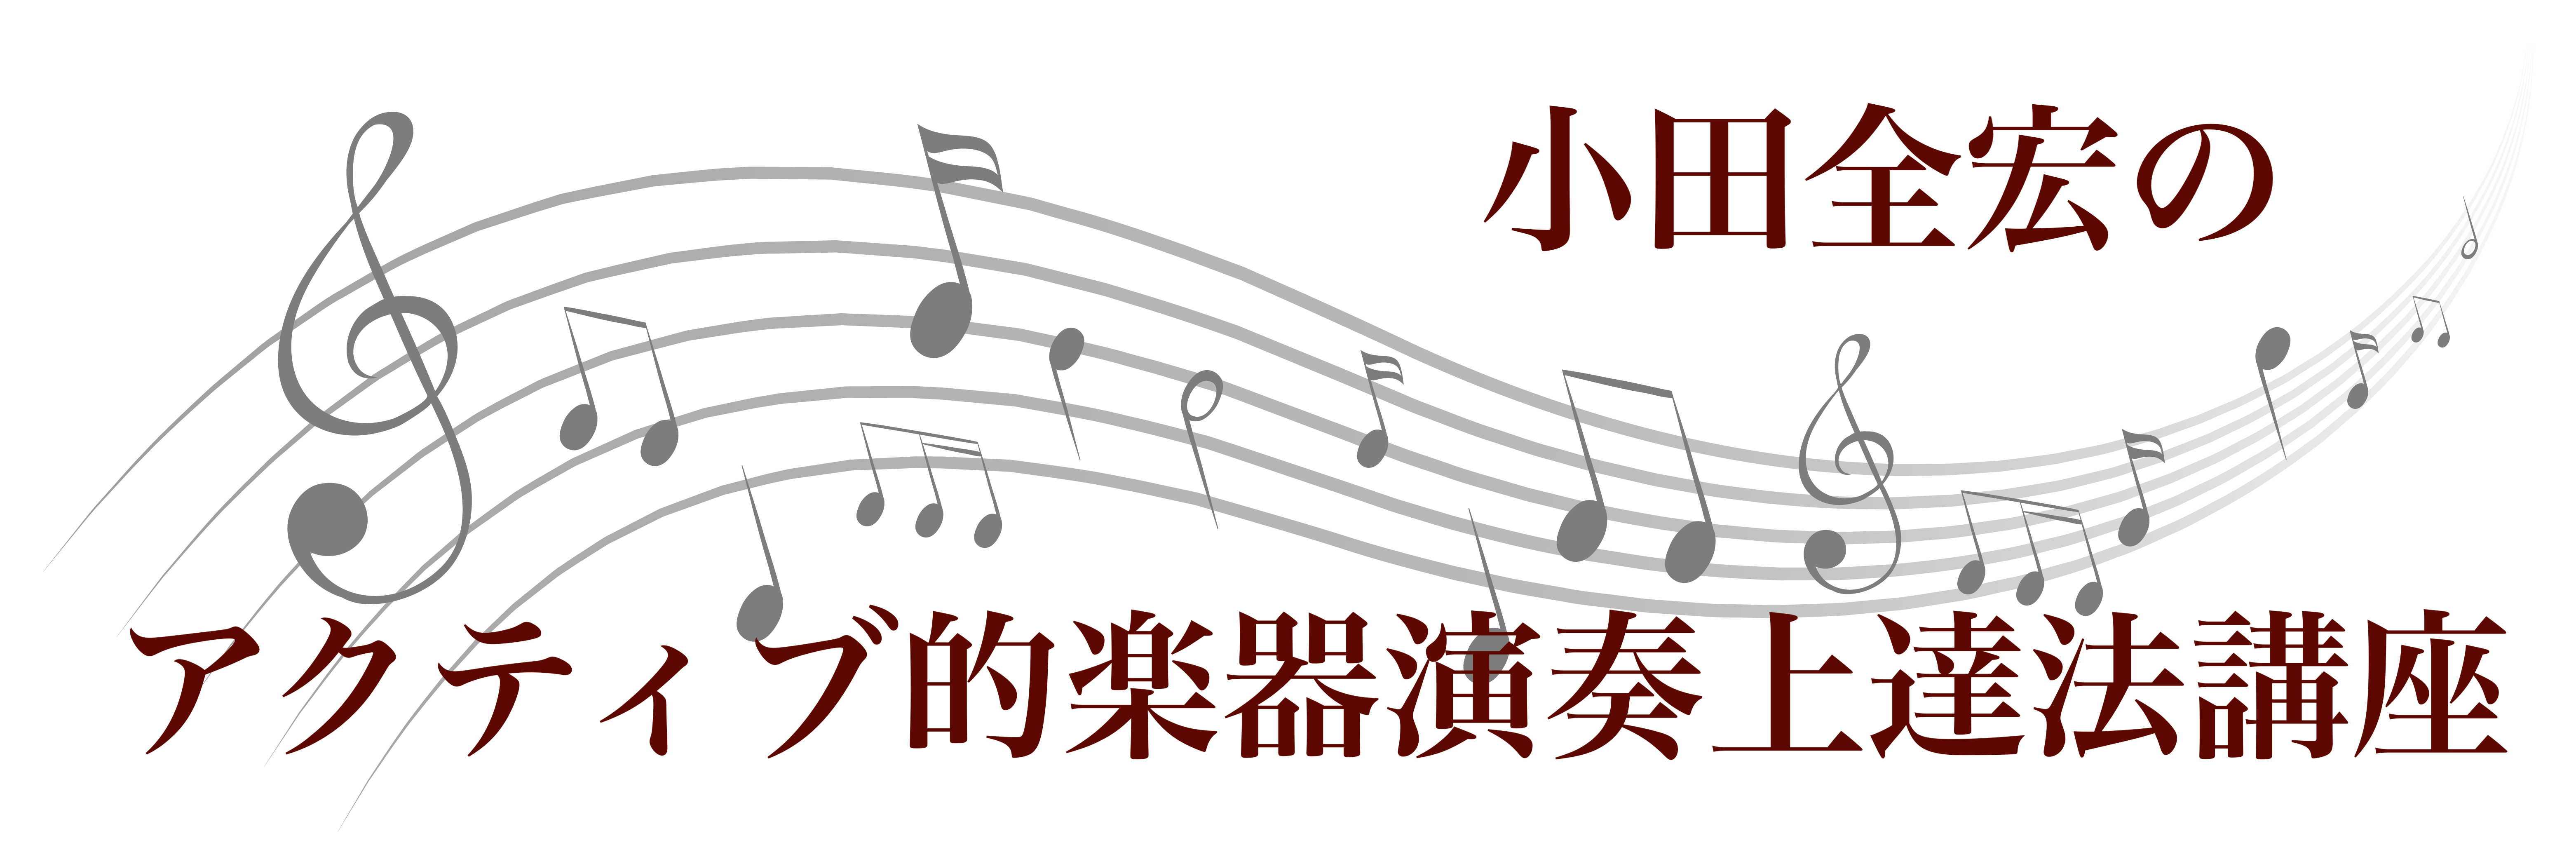 【満員御礼♪】小田全宏のアクティブ的楽器演奏上達法講座